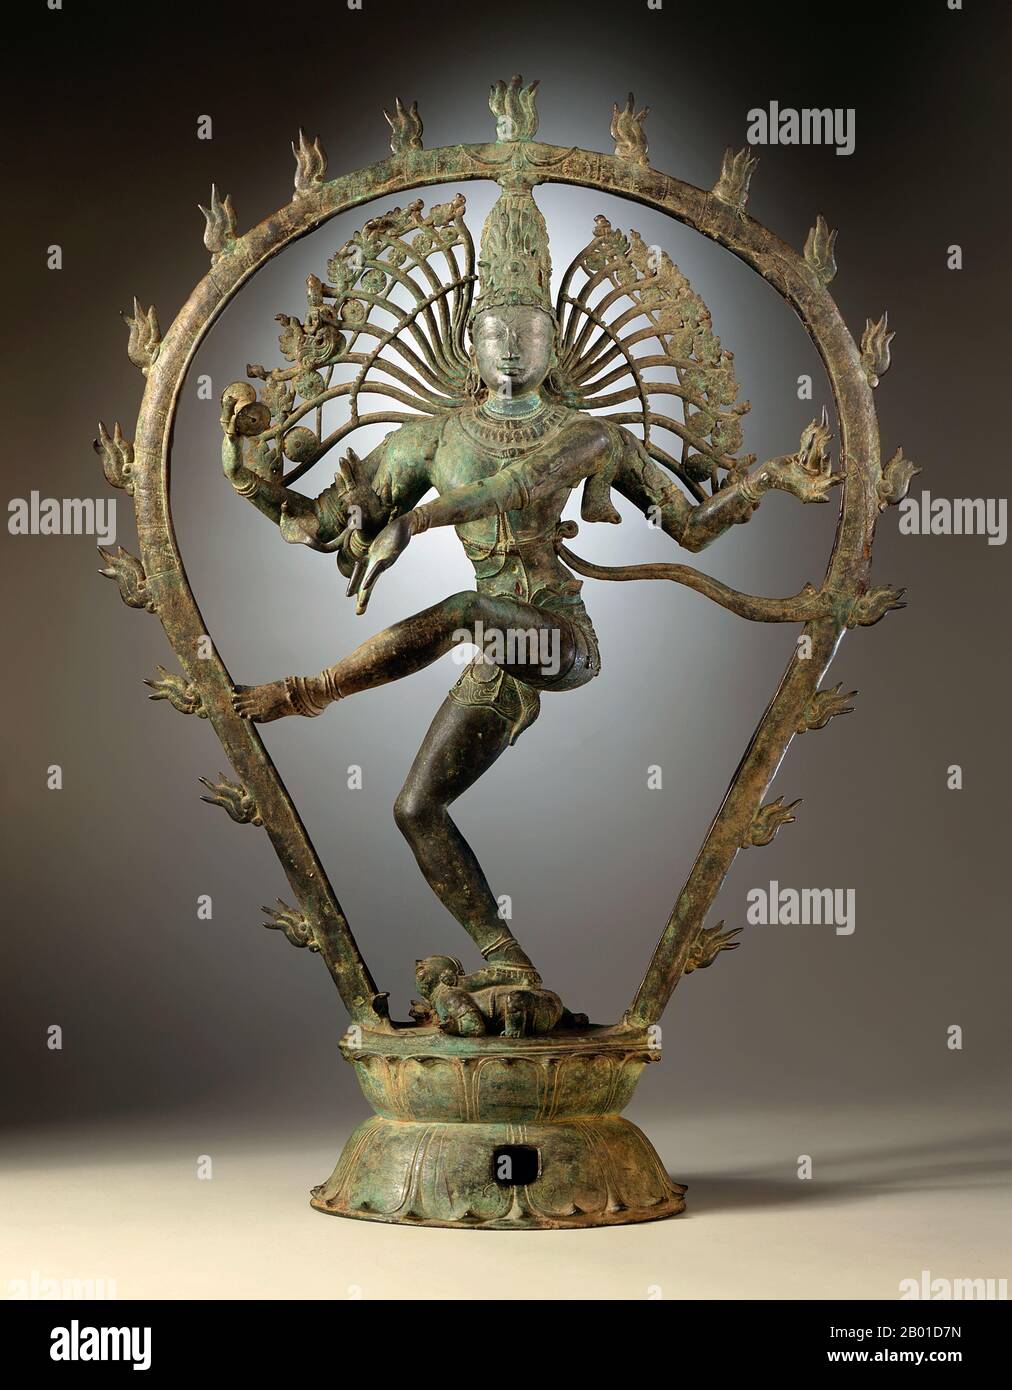 Indien: Shiva Nataraja oder 'Dancing Shiva'. Kupferlegierung Statuette aus Tamil Nadu, Chola-Dynastie, c. 950-1000 CE. Nataraja oder Nataraj ('der Herr (oder König) des Tanzes'; Tamil: Koothhan) ist eine Darstellung des Hindu-gottes Shiva als der kosmische Tänzer Koothan, der seinen göttlichen Tanz aufführt, um ein müdes Universum zu zerstören und Vorbereitungen für den gott Brahma zu treffen, um den Schöpfungsprozess zu beginnen. Shiva, ein tamilisches Konzept, wurde zuerst als Nataraja in den berühmten Chola-Bronzen und Skulpturen von Chidambaram dargestellt. Stockfoto